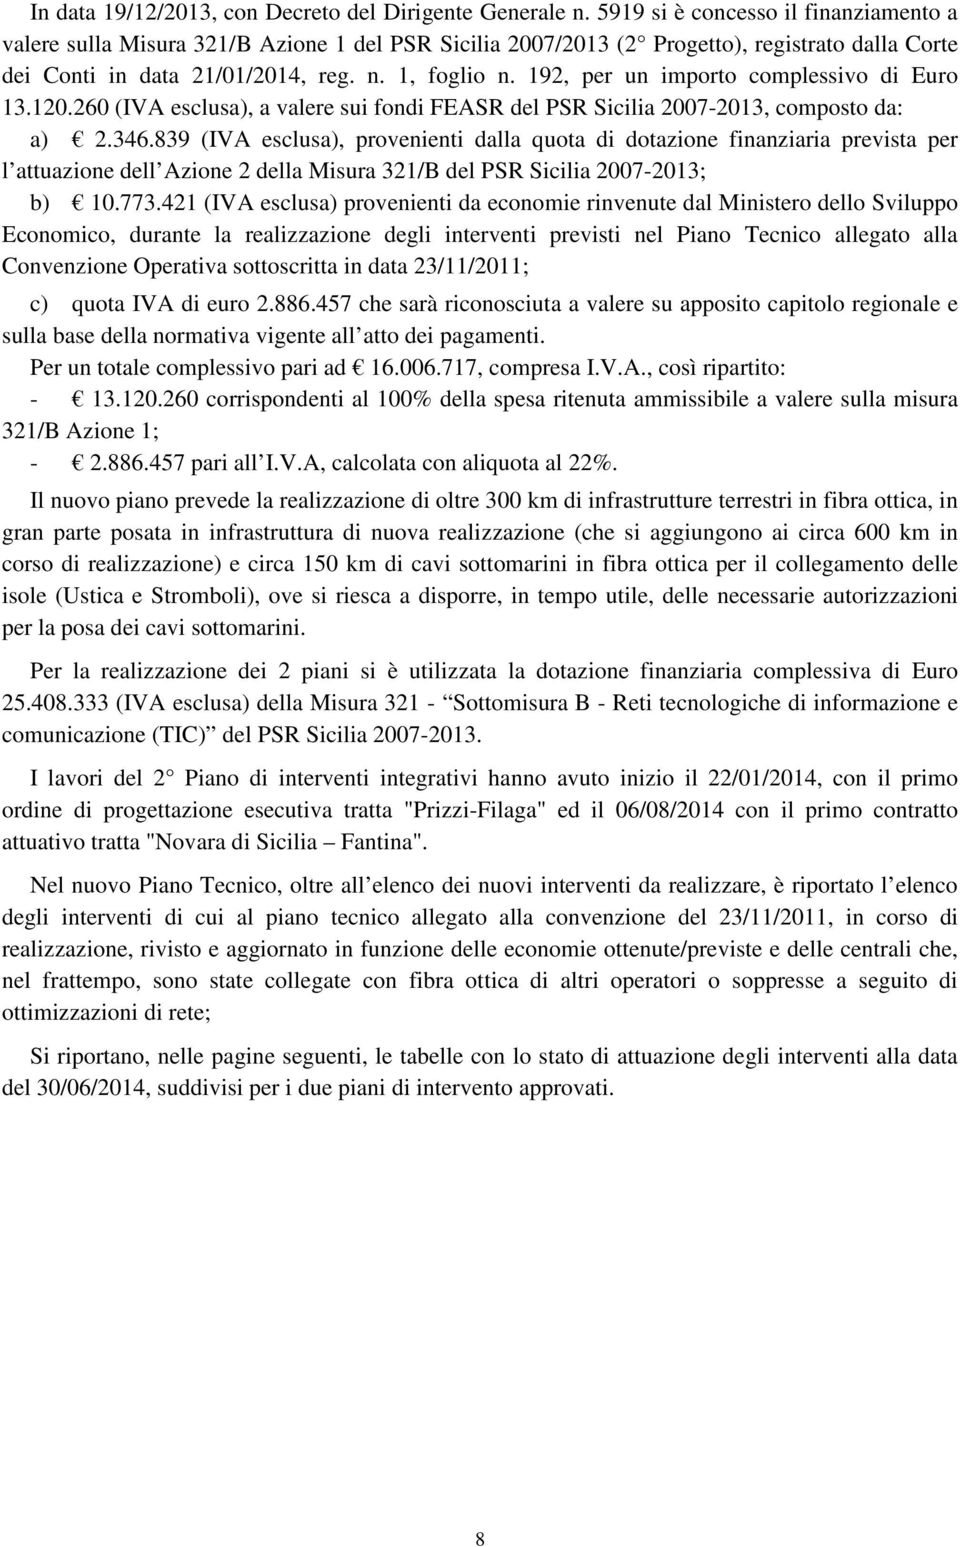 192, per un importo complessivo di Euro 13.120.260 (IVA esclusa), a valere sui fondi FEASR del PSR Sicilia 2007-2013, composto da: a) 2.346.